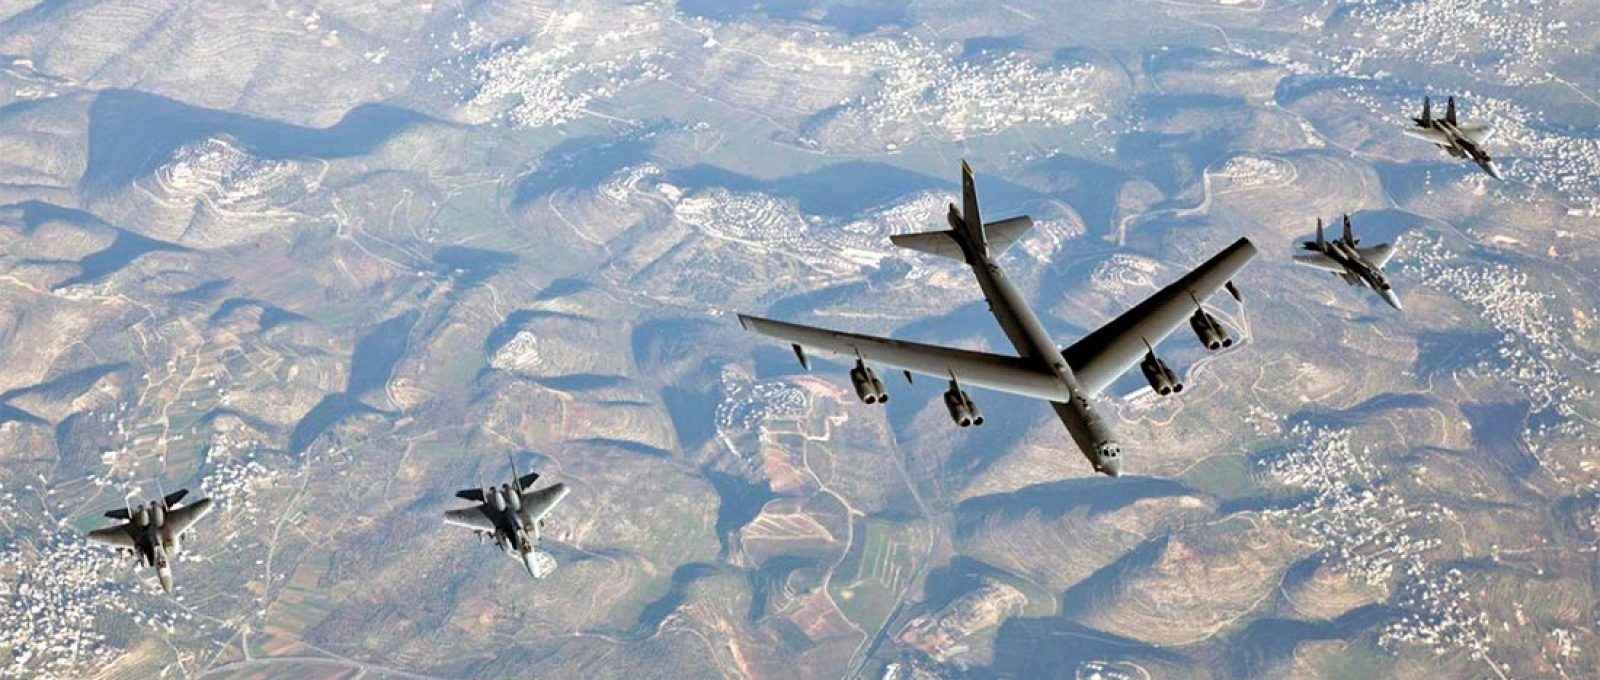 Capa-B-52-F-15-Israel